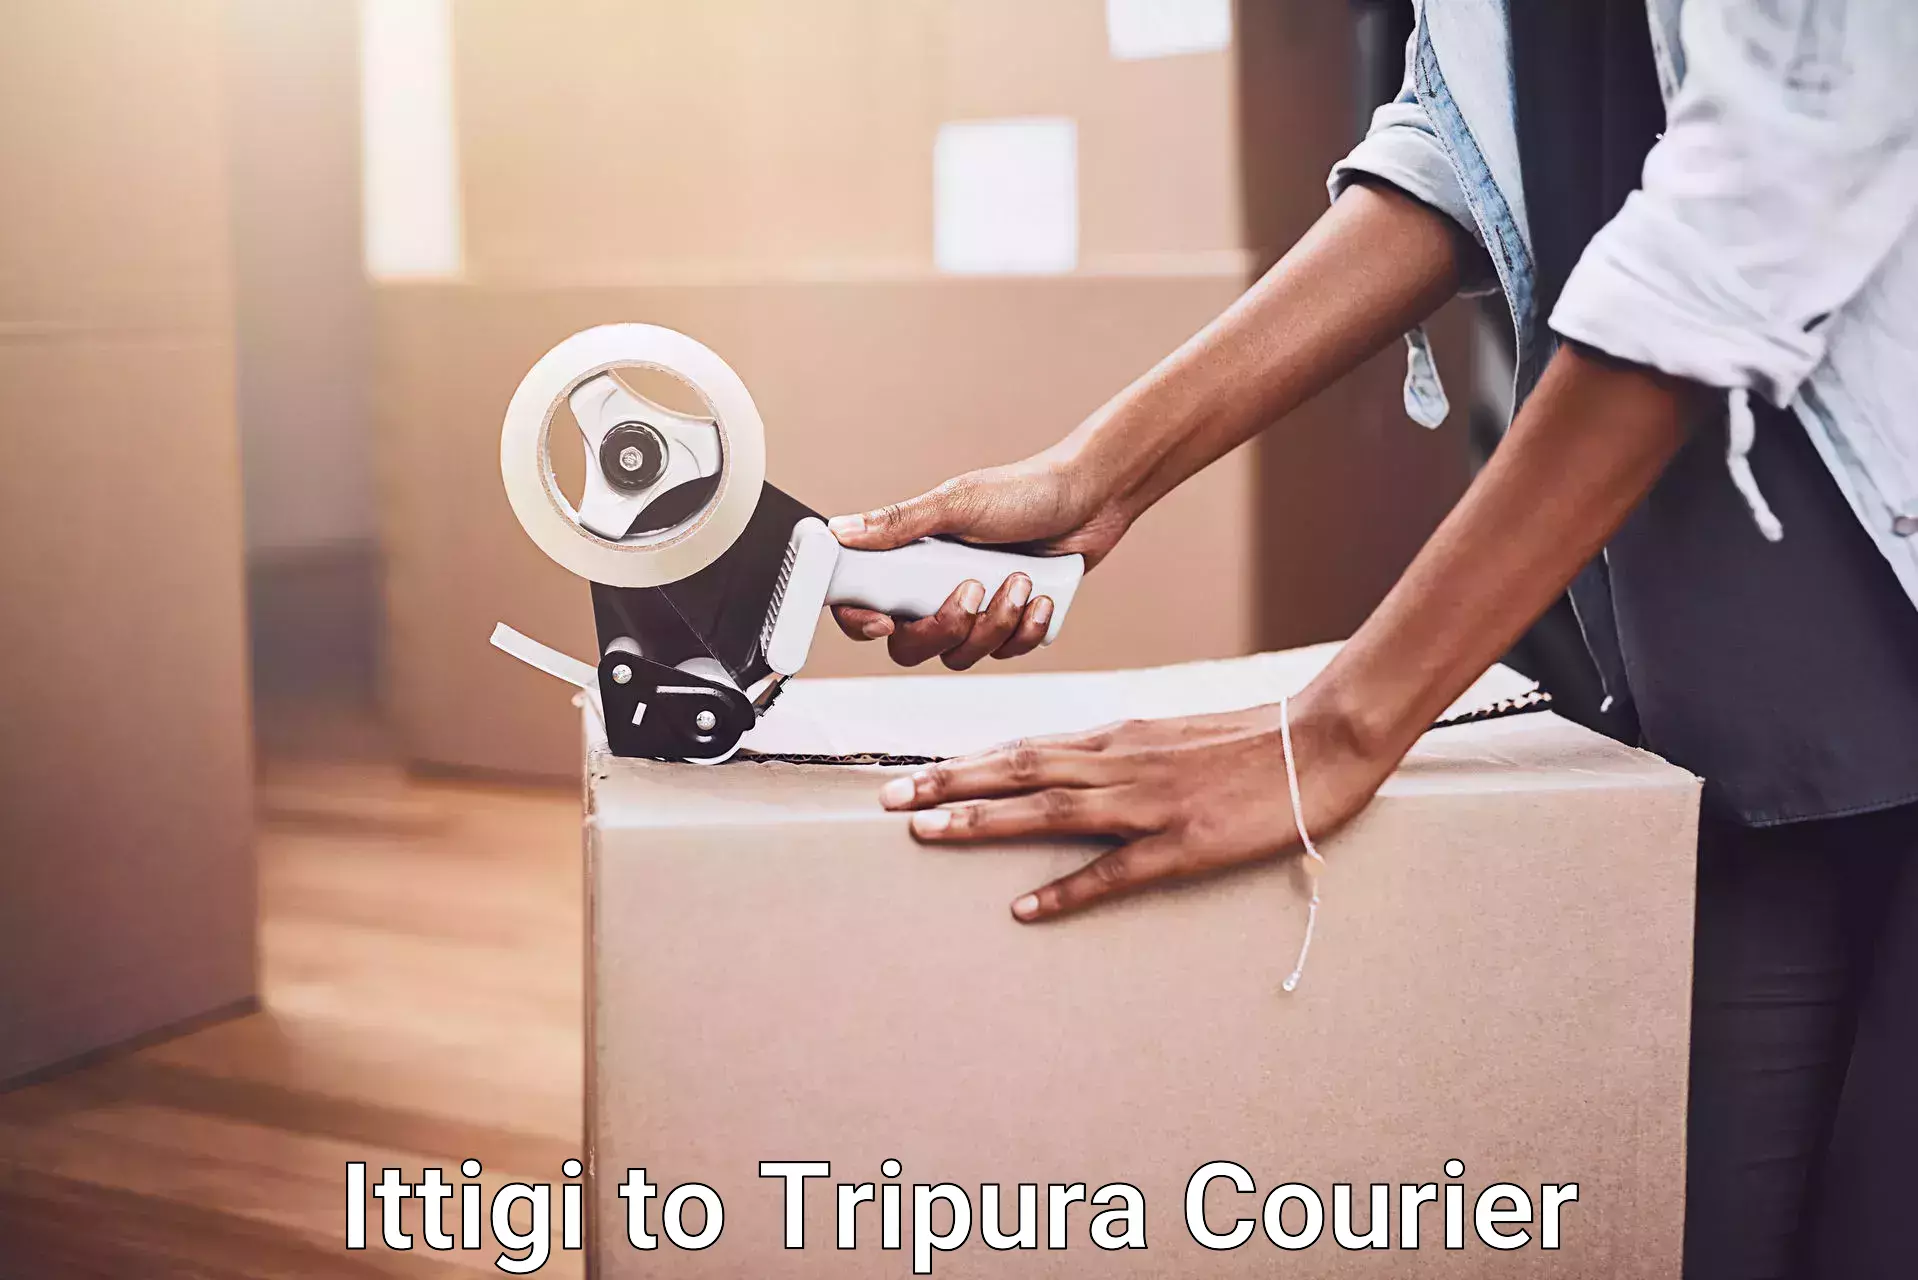 Household goods shipping in Ittigi to Agartala